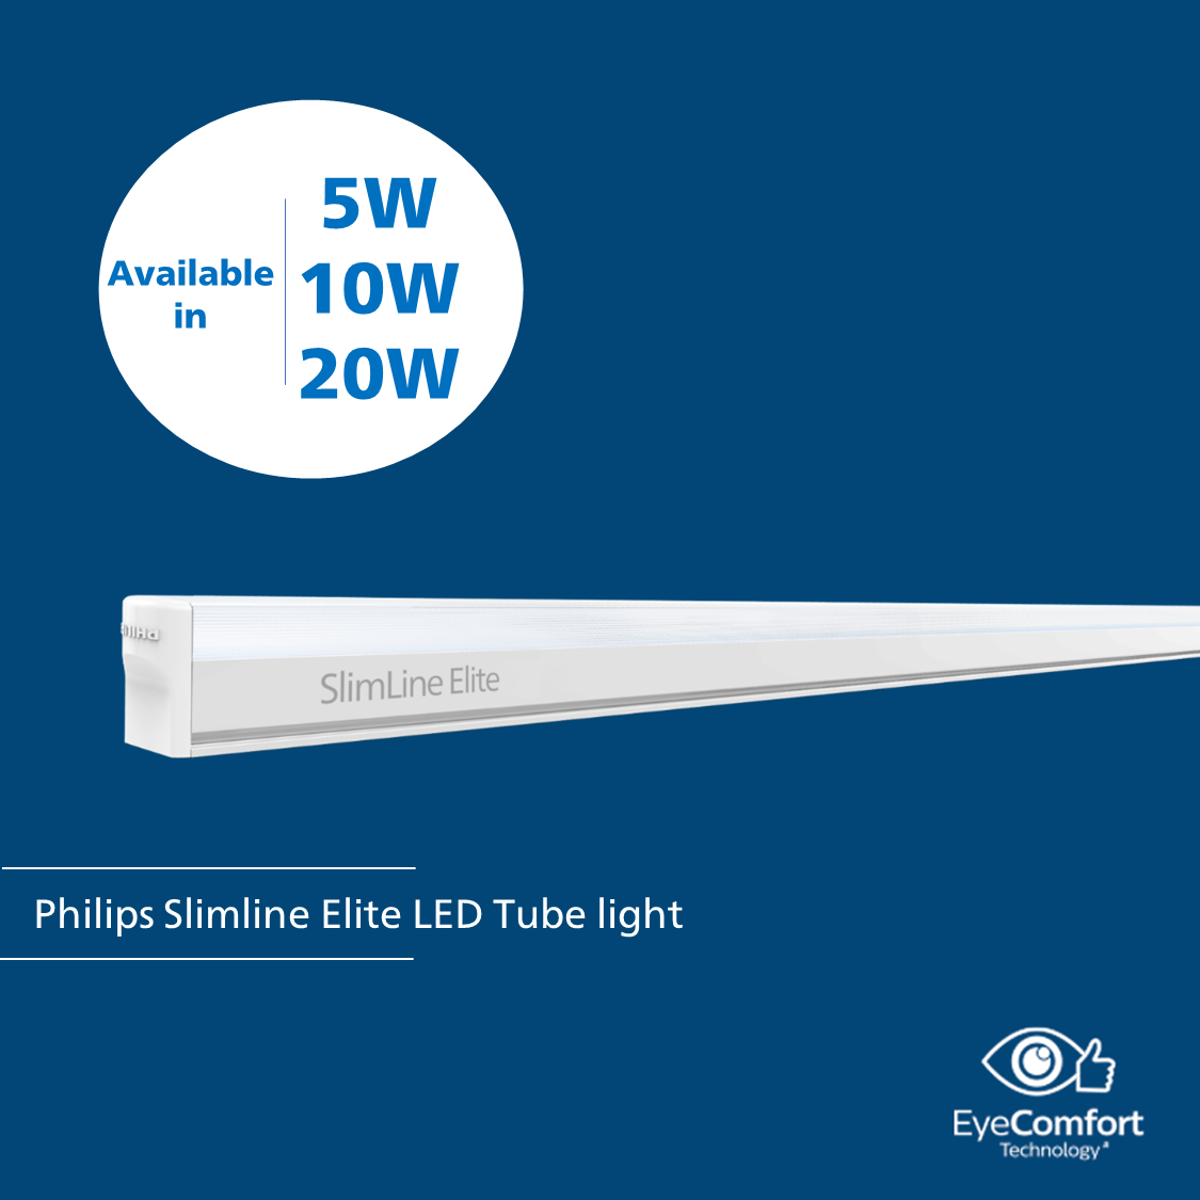 Philips SlimLine Elite LED Tube light